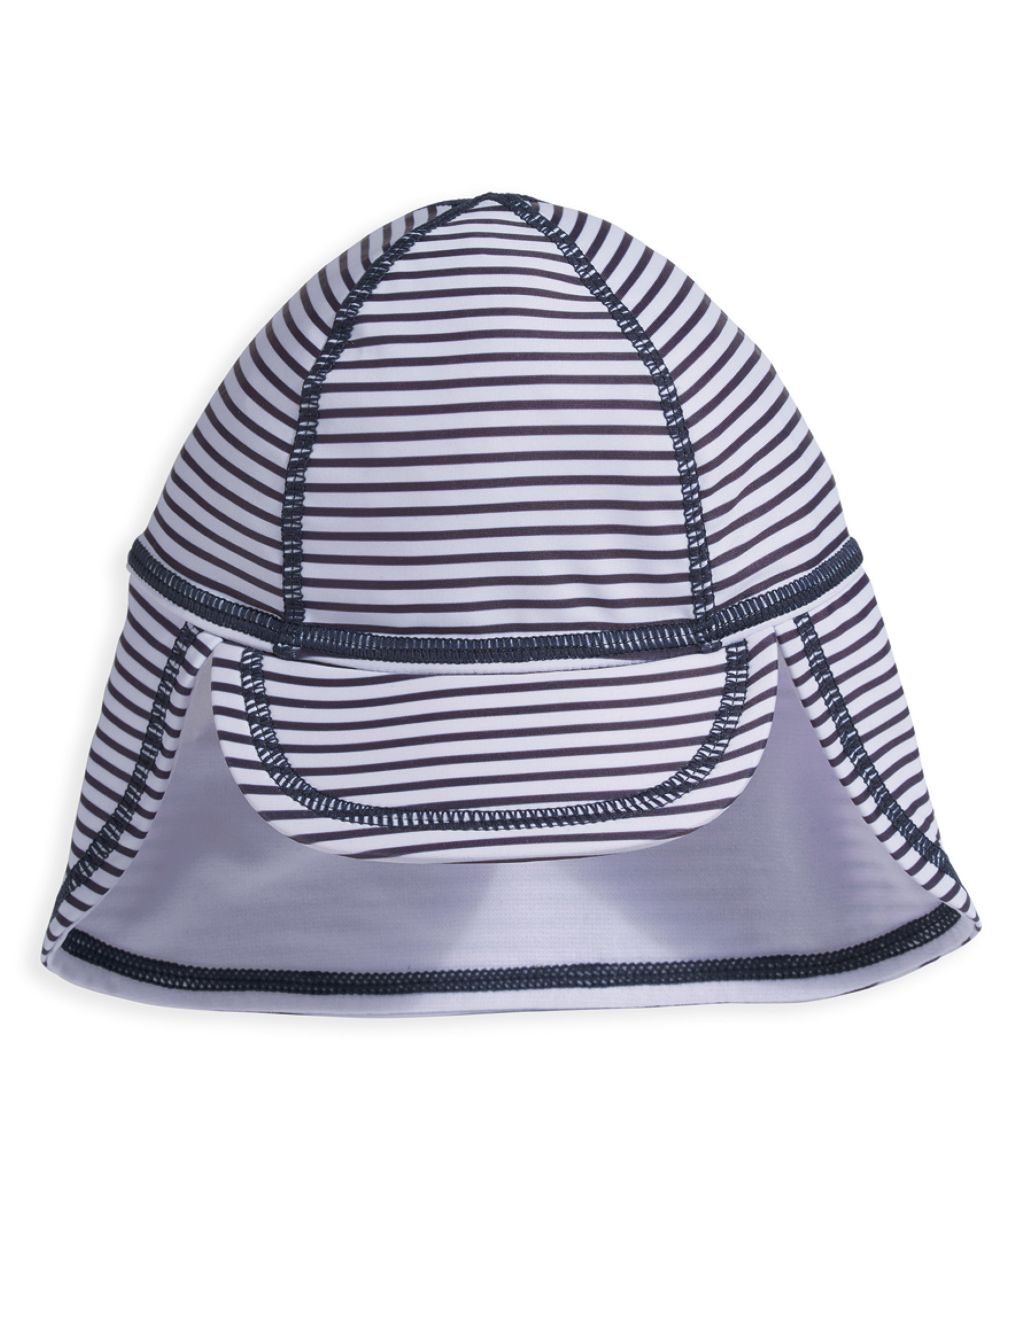 Kids' Striped Swim Hat (0-3 Yrs)